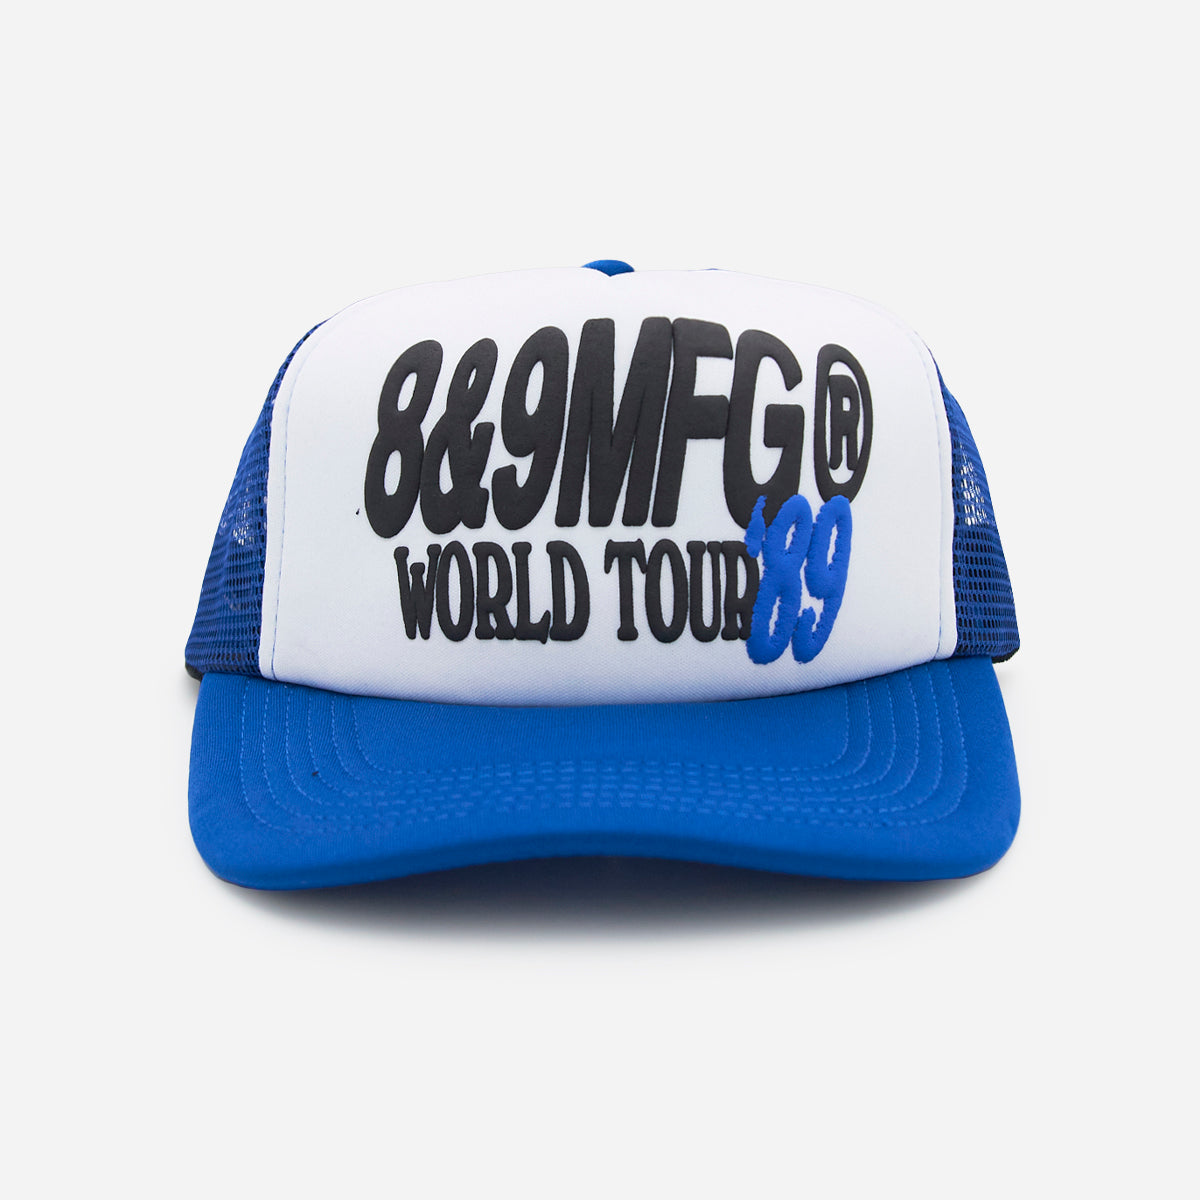 World Tour Trucker Hat Blue